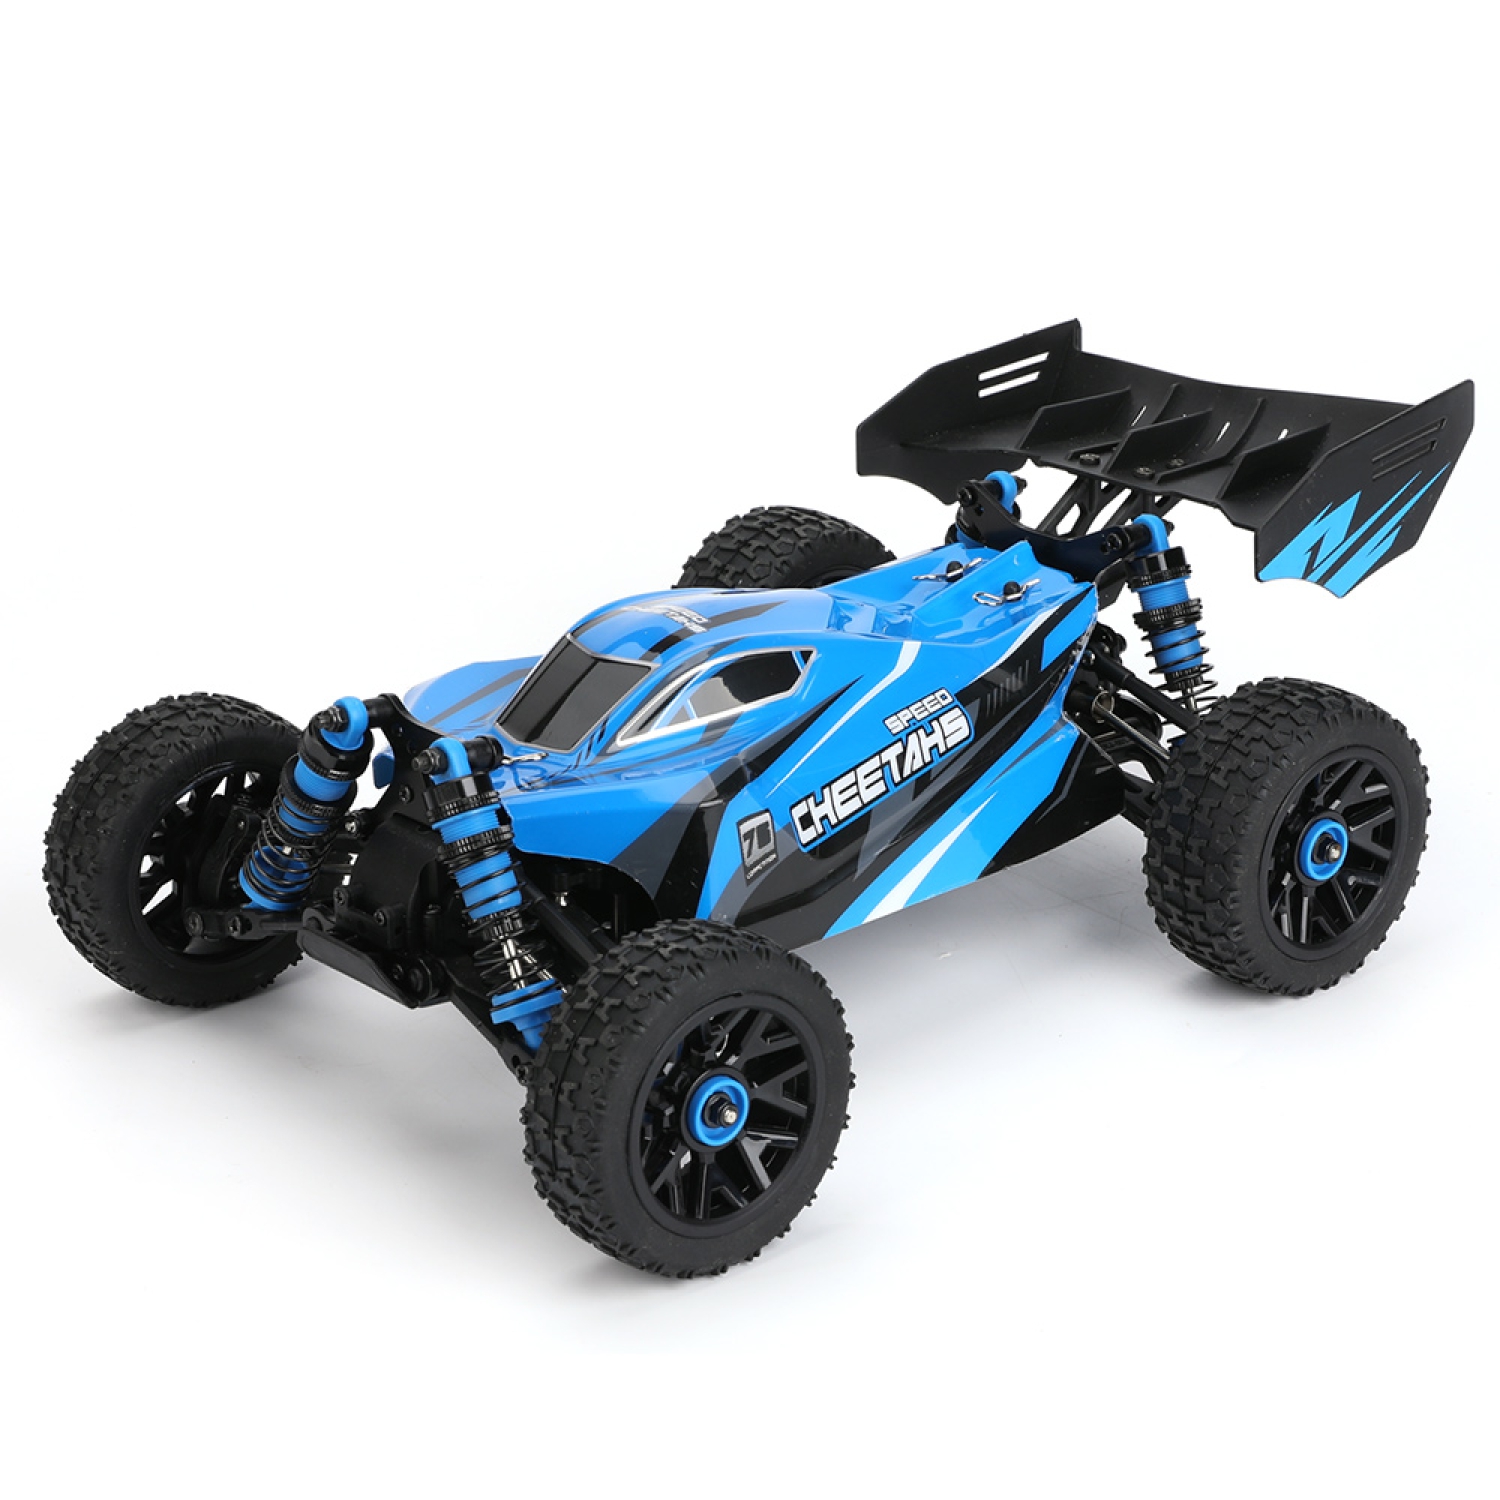 RC buggy terénní vozidlo 4x4, 1:14, 2.4 GHz, 60km/h, modré